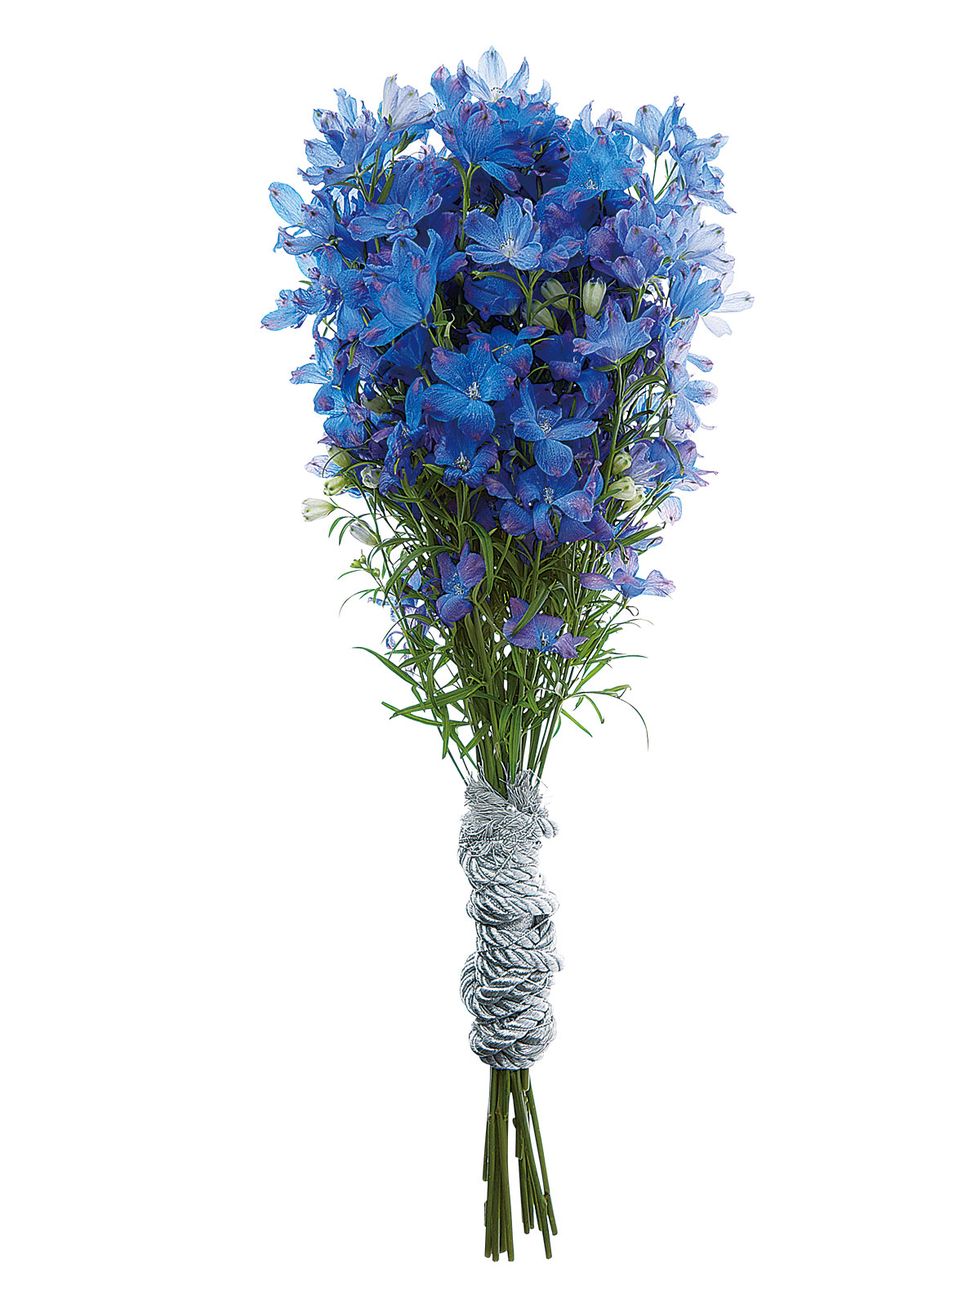 Flower, Flowering plant, Plant, Cut flowers, Blue, Bouquet, Delphinium, Agapanthus, Artificial flower, Hydrangea, 